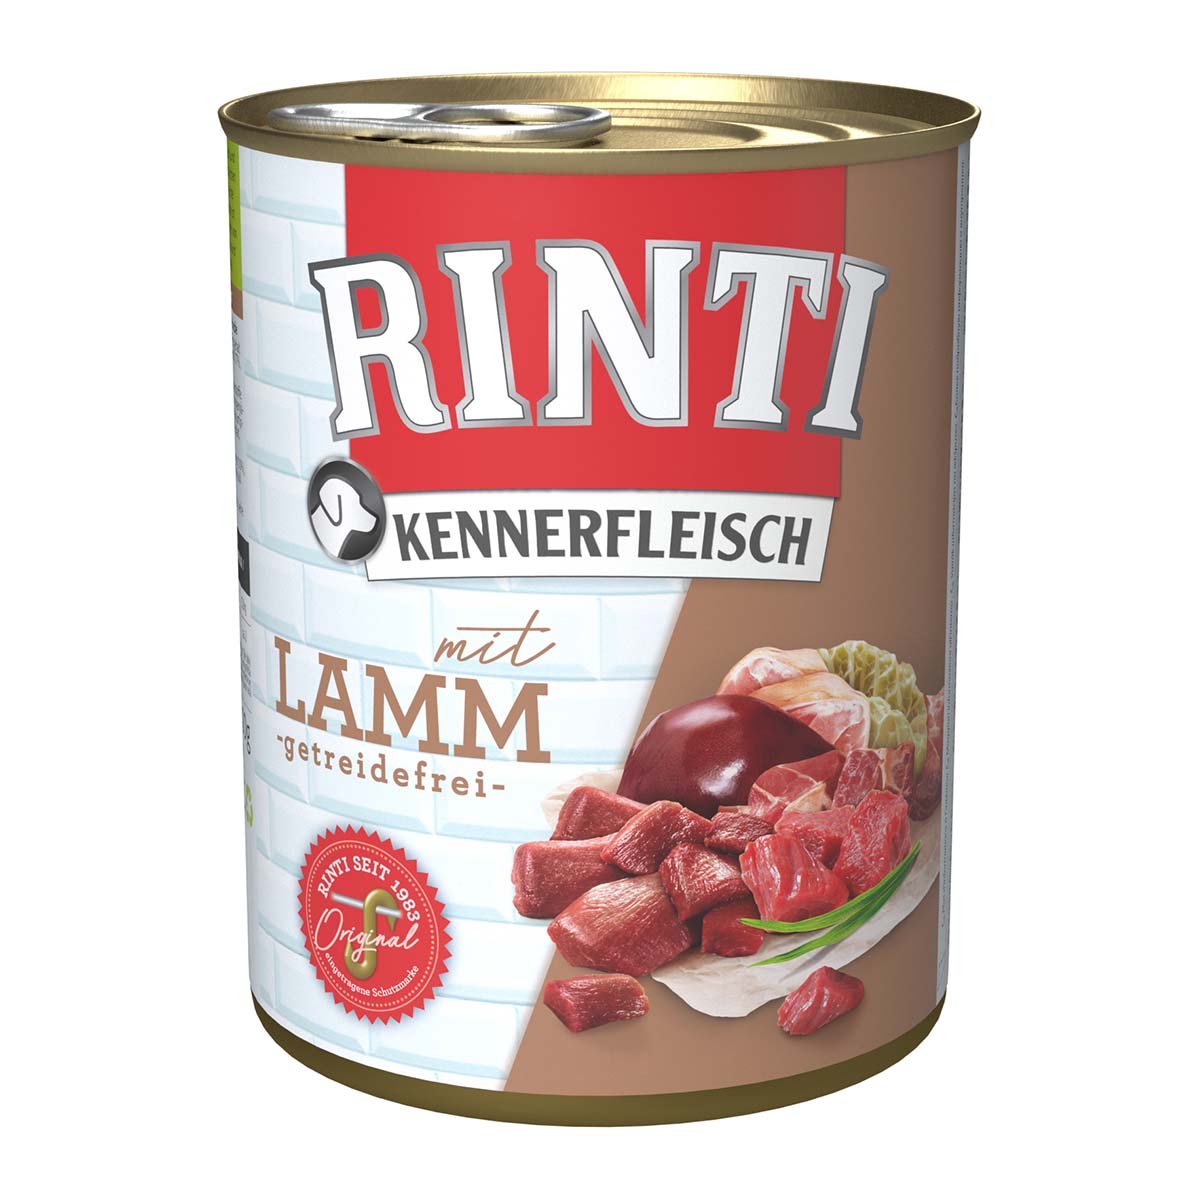 Rinti Kennerfleisch mit Lamm 24x800g